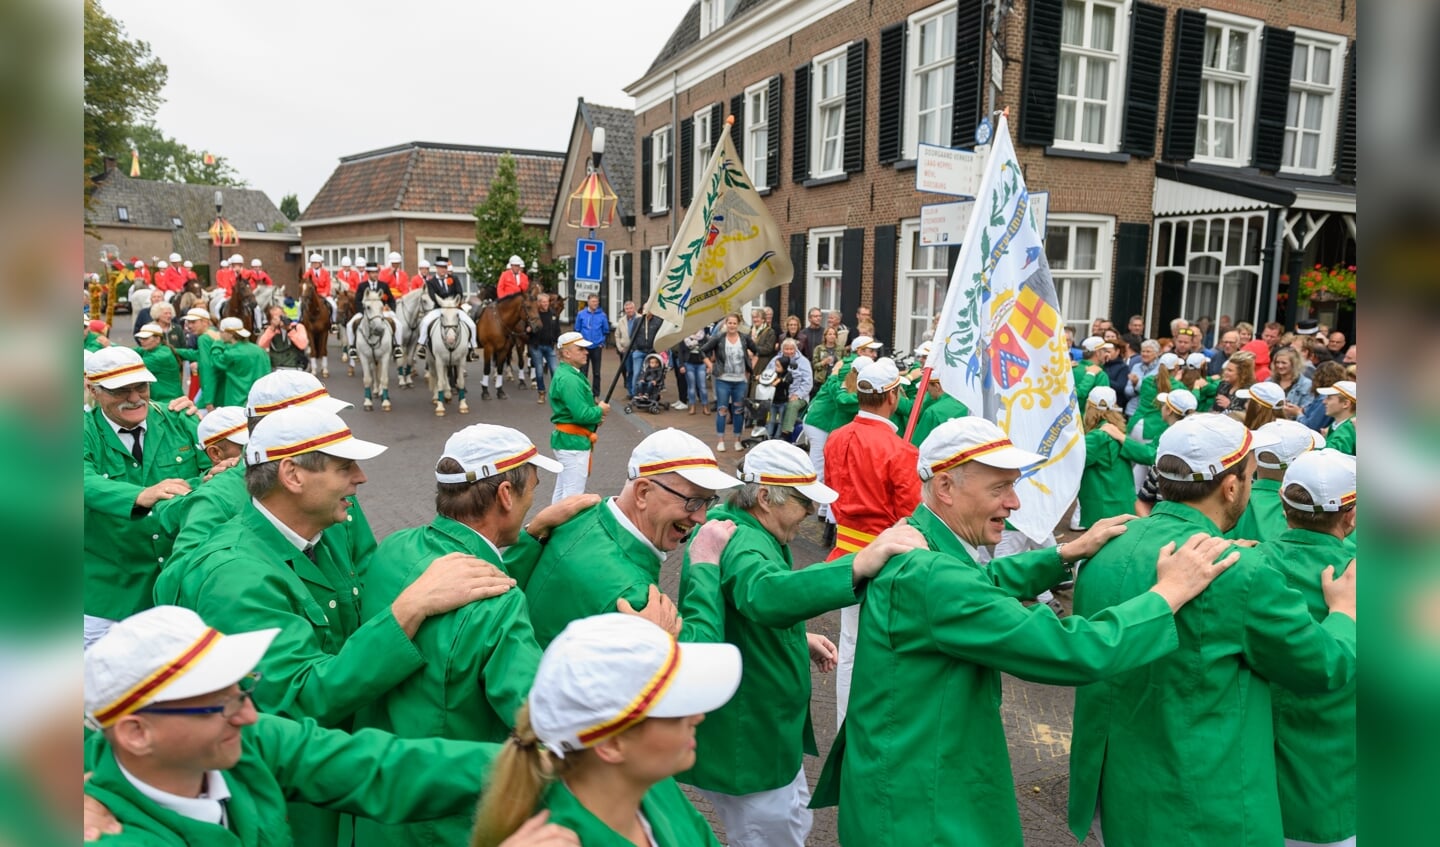 Muziekvereniging, ruiters, schutters en publiek bij de Gouden Karper tijdens het volksfeest in Hummelo. Foto: Achterhoekfoto.nl/Henk den Brok